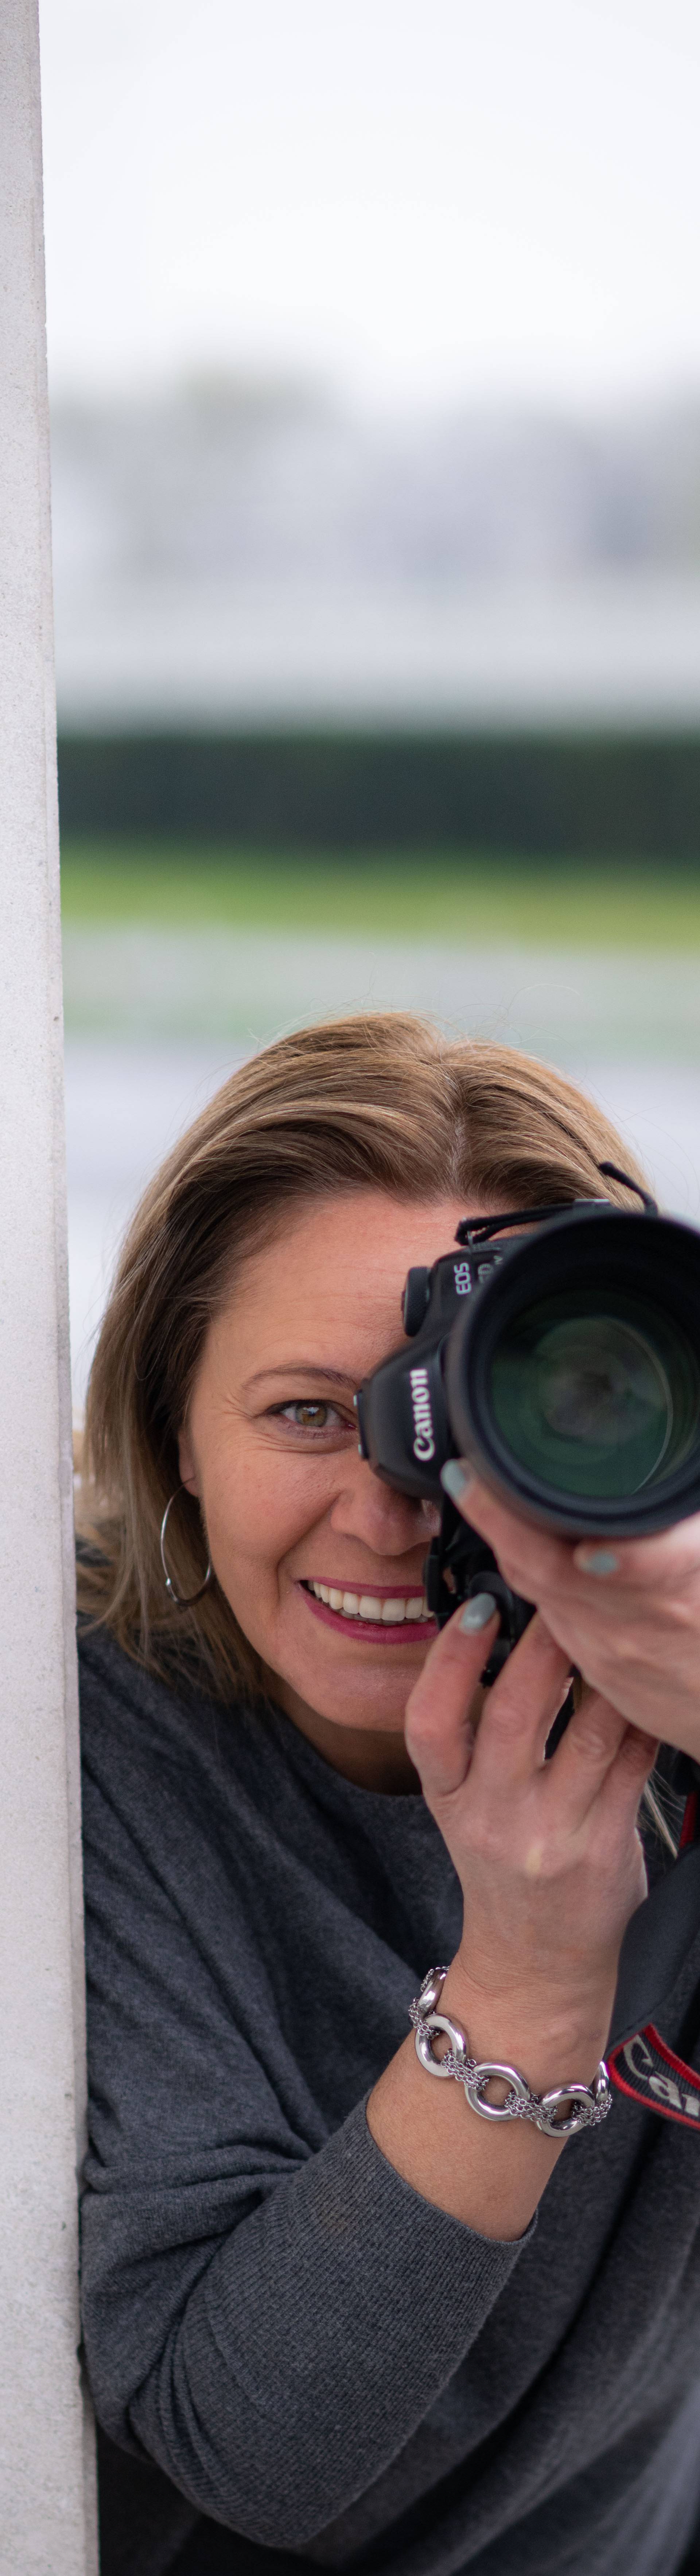 Žene iza objektiva: Upoznajte četiri fotoreporterke Pixsella!